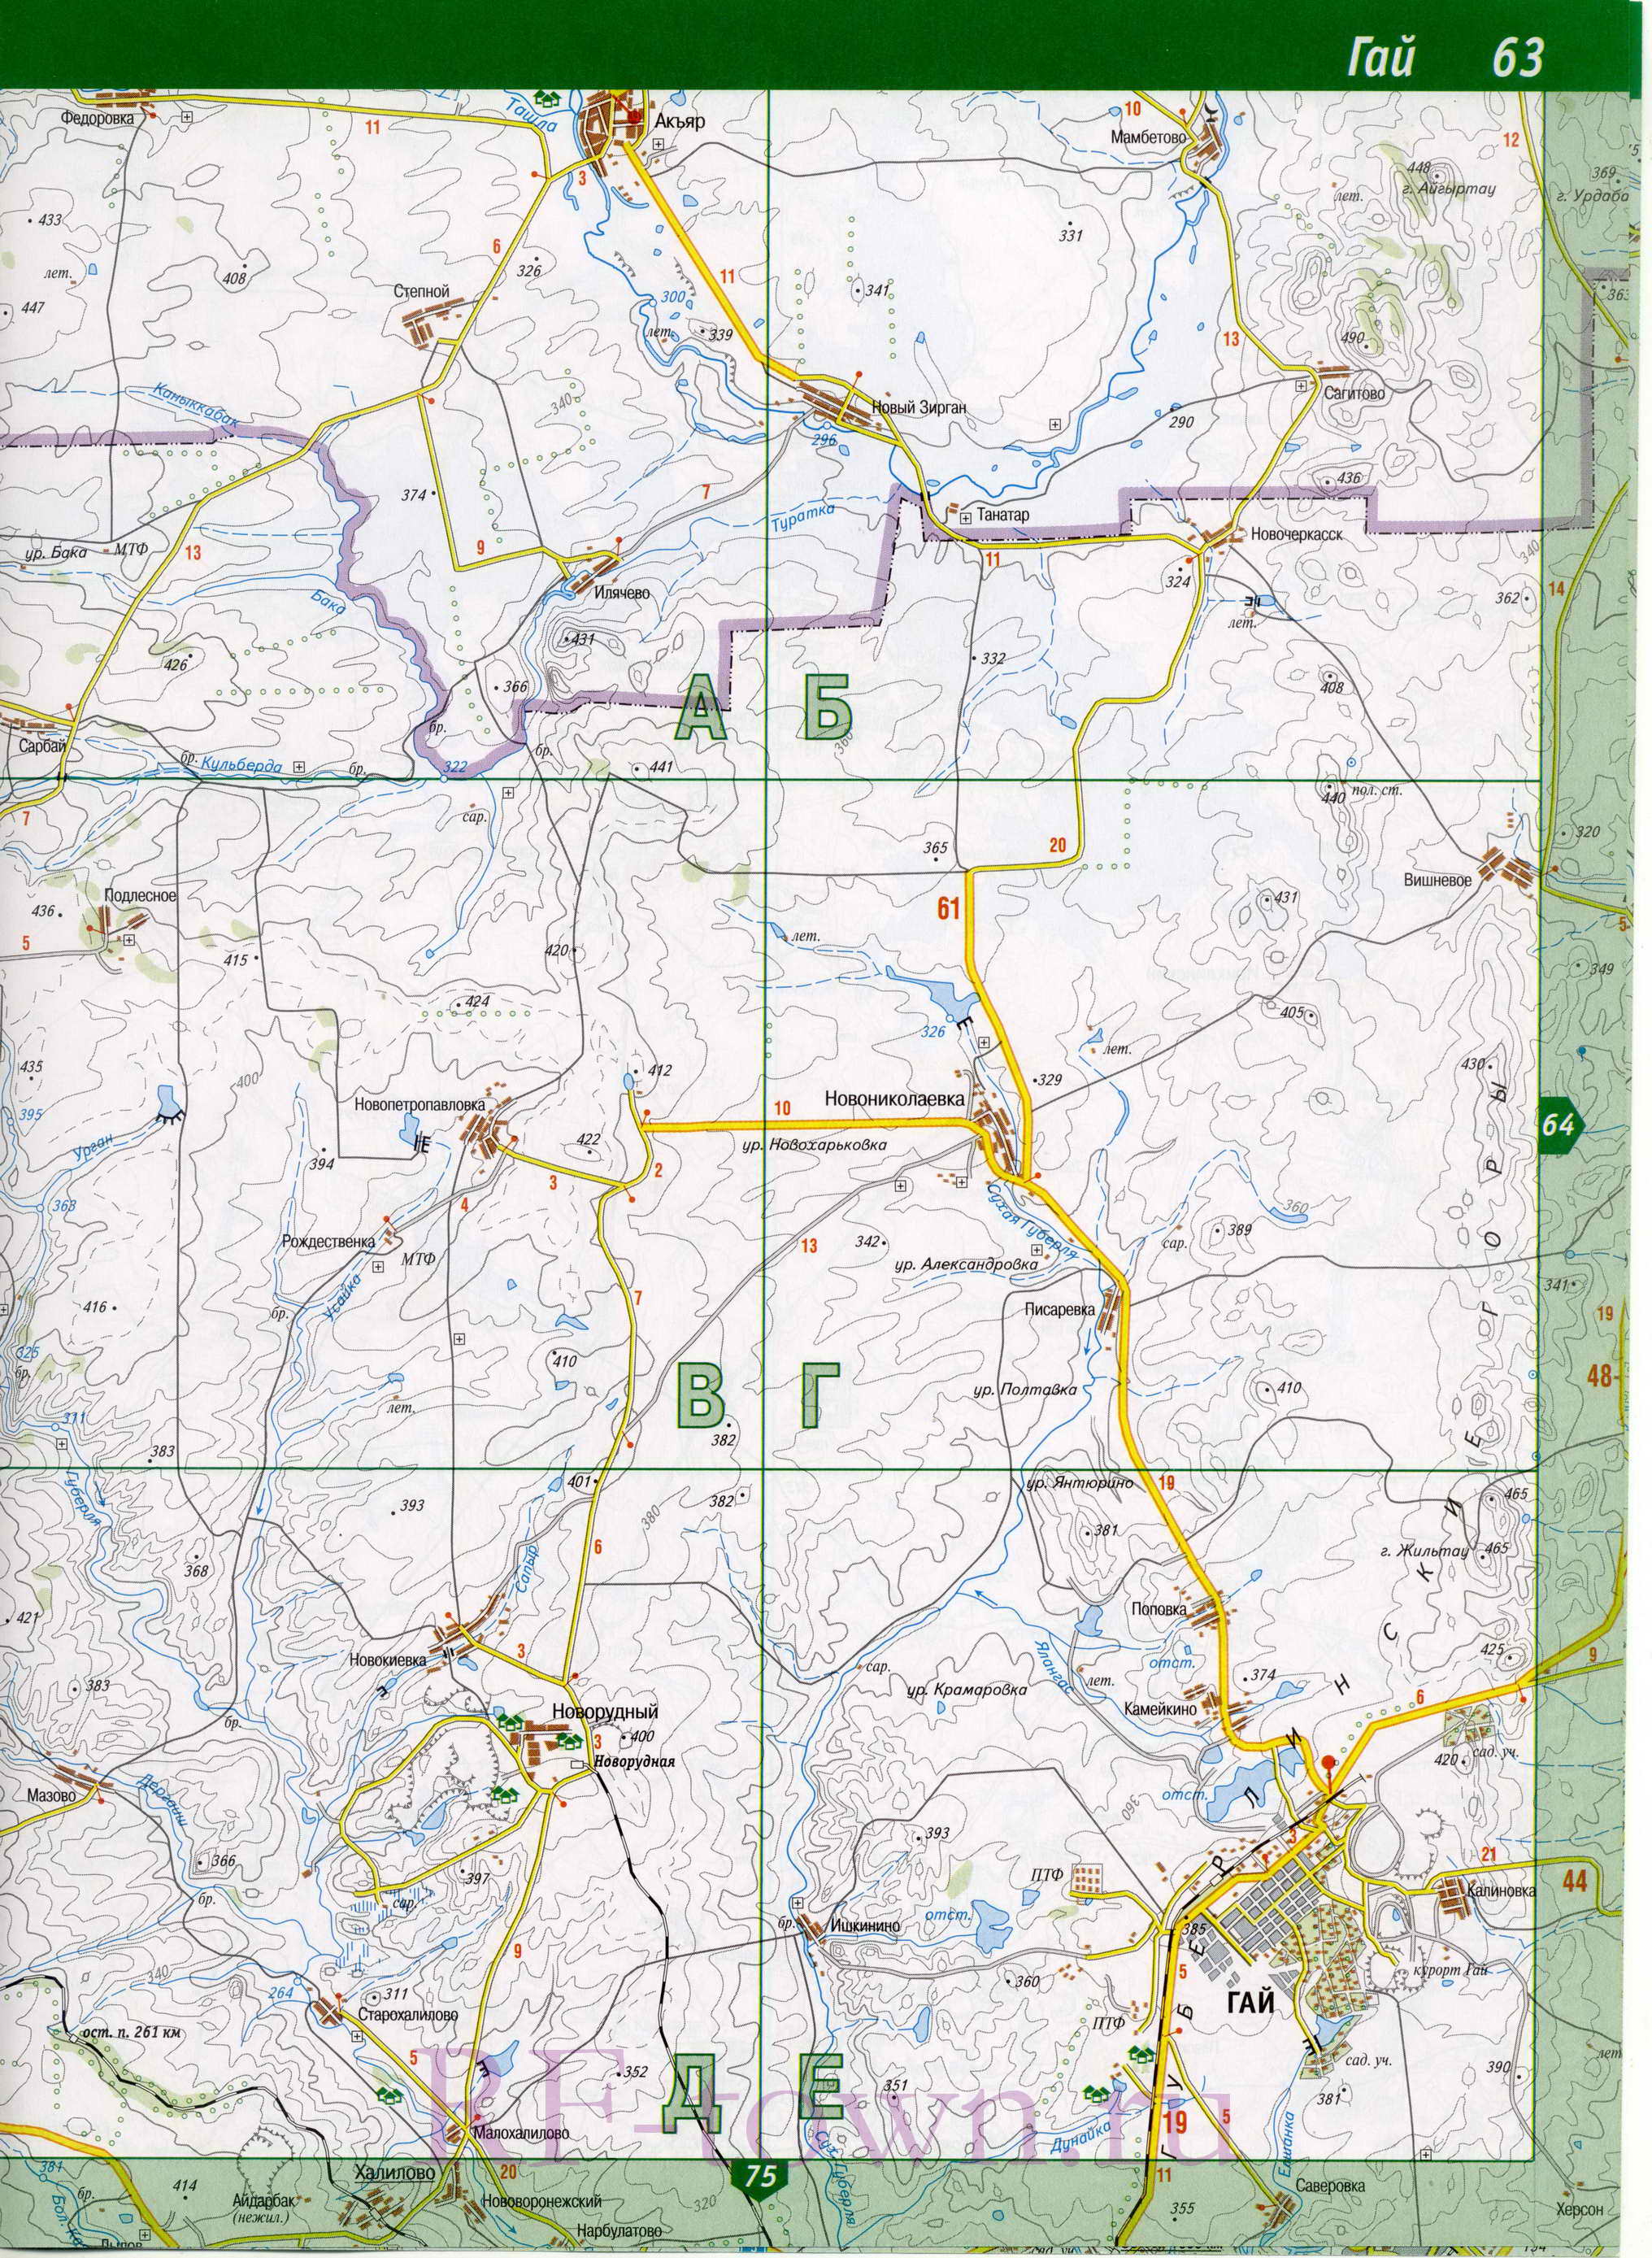 Кувандыкский район карта. Топографическая карта Кувандыкского р-на Оренбургской области масштаба 1см:2км, C0 - 